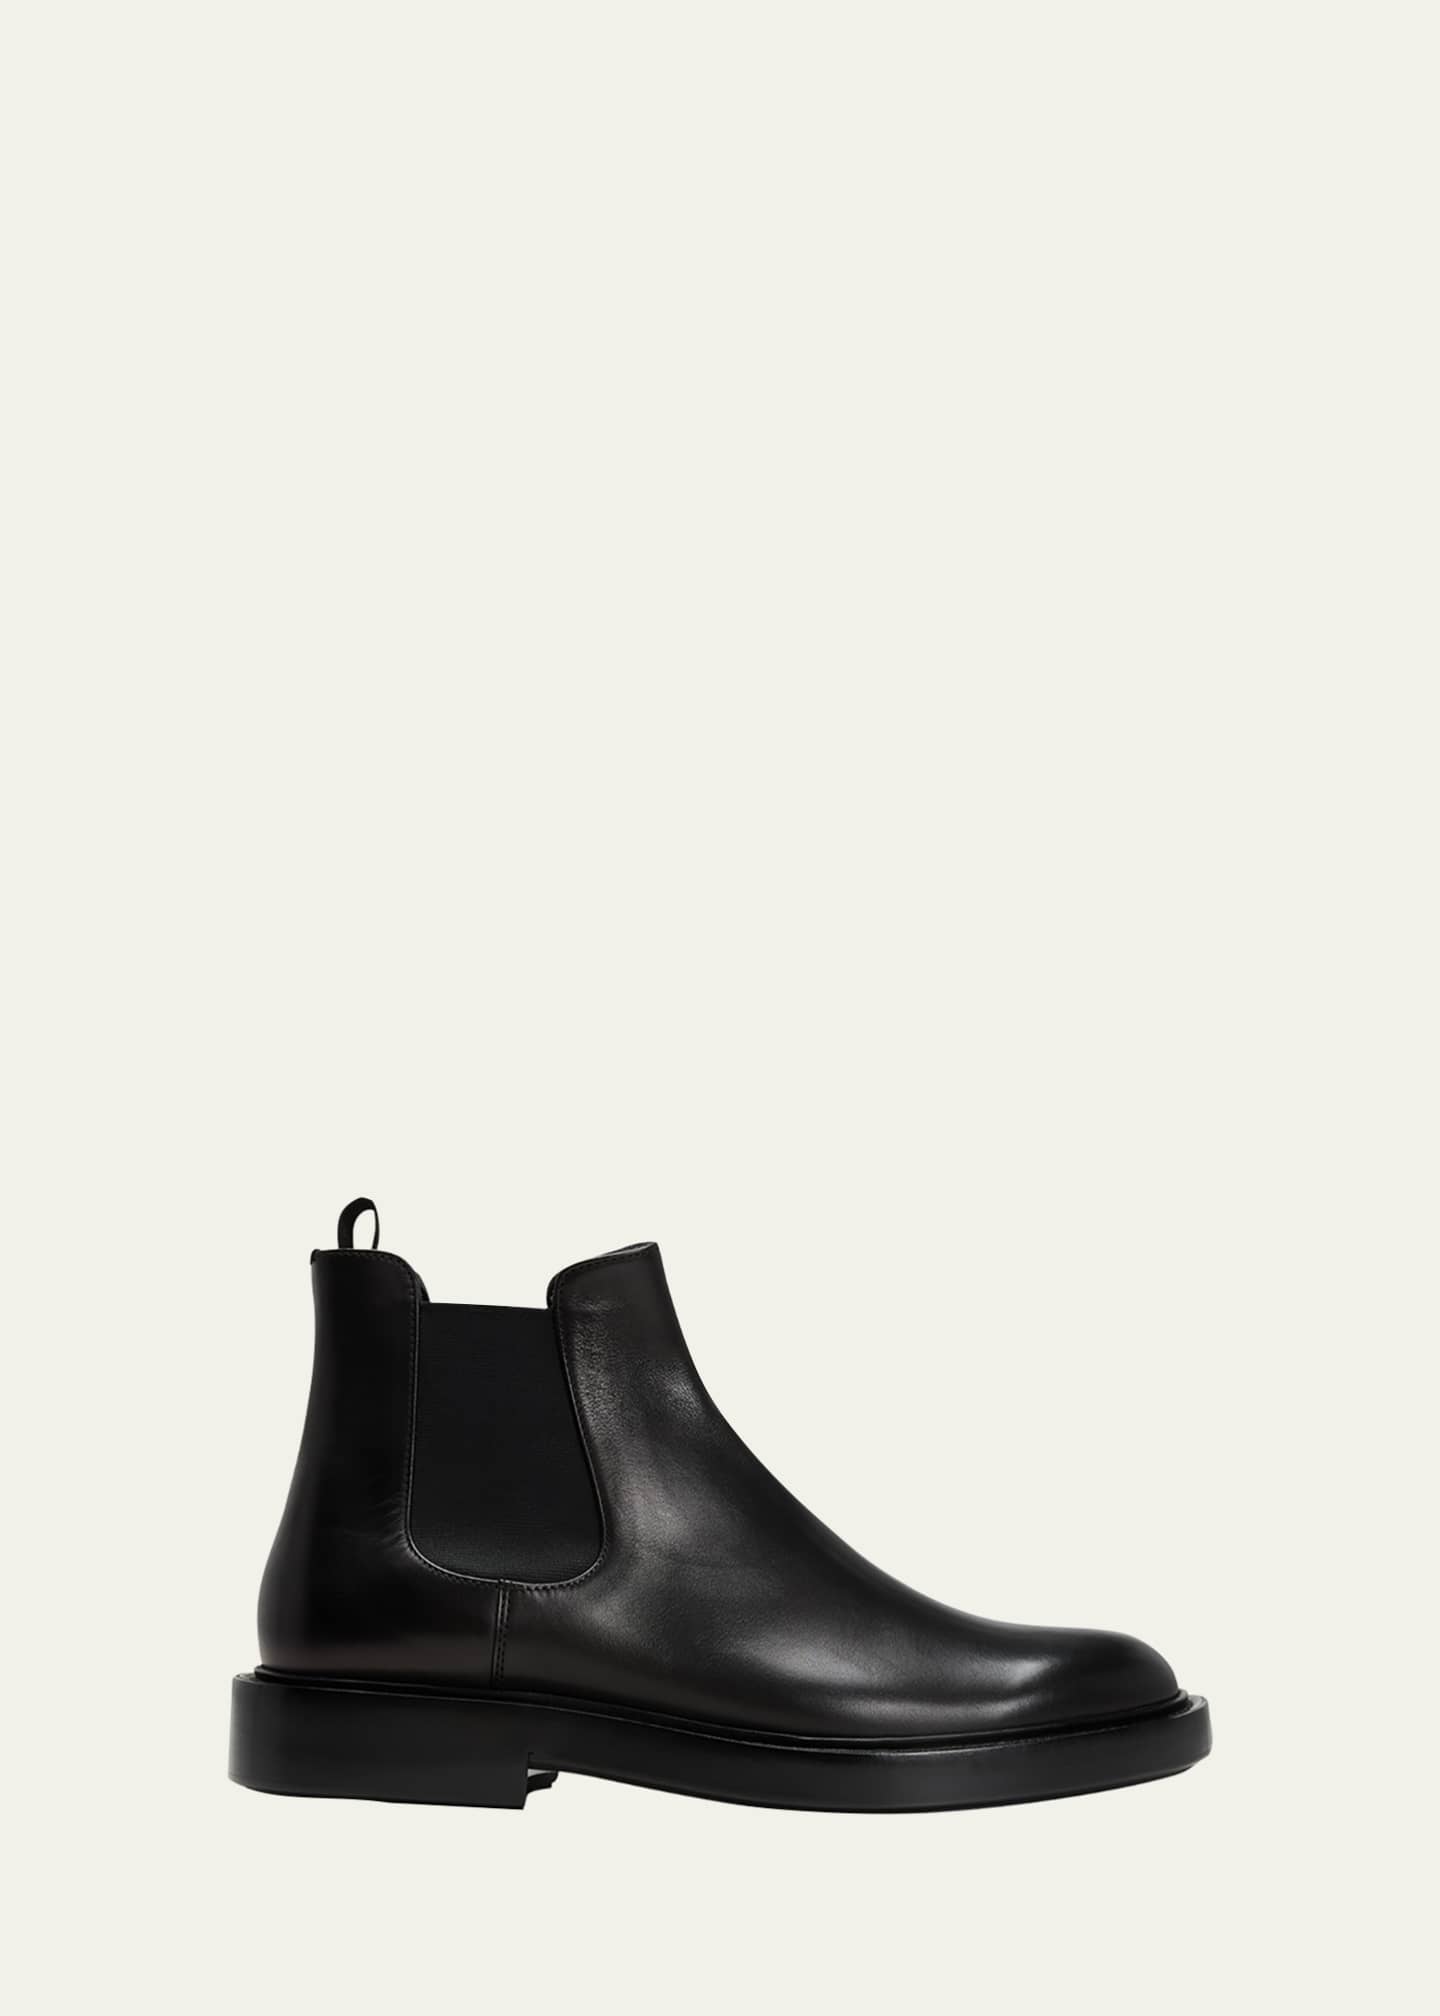 Giorgio Armani Men's Leather Chelsea Boots - Bergdorf Goodman